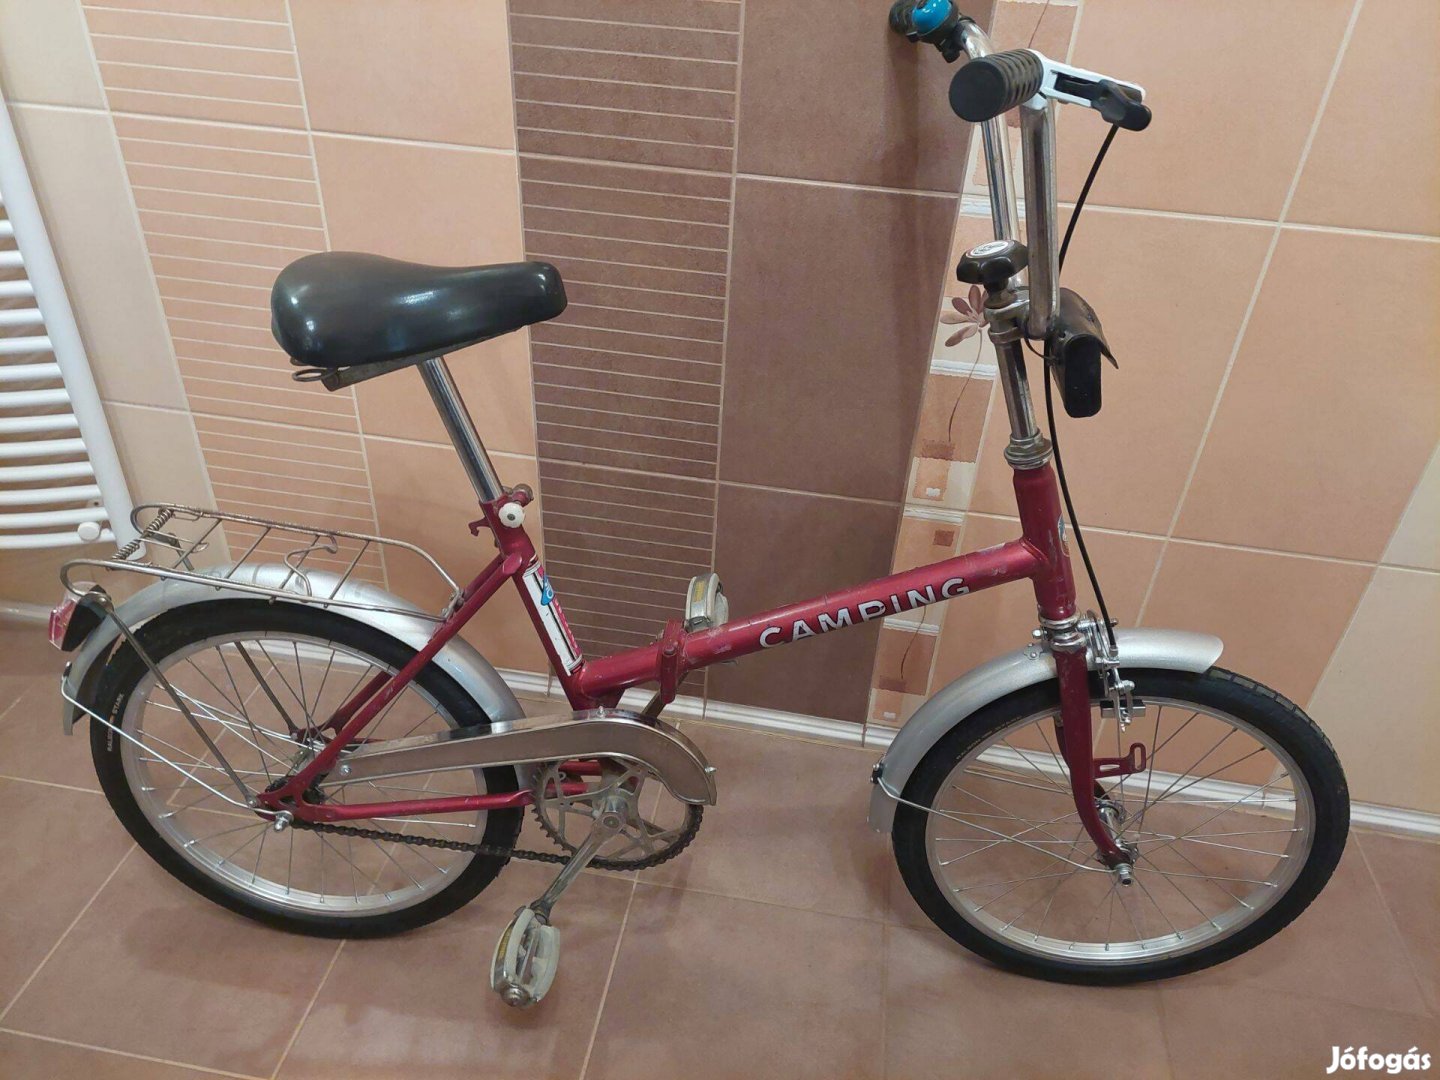 Eladó kitűnő állapotban lévő összecsukható kemping bicikli kerékpár